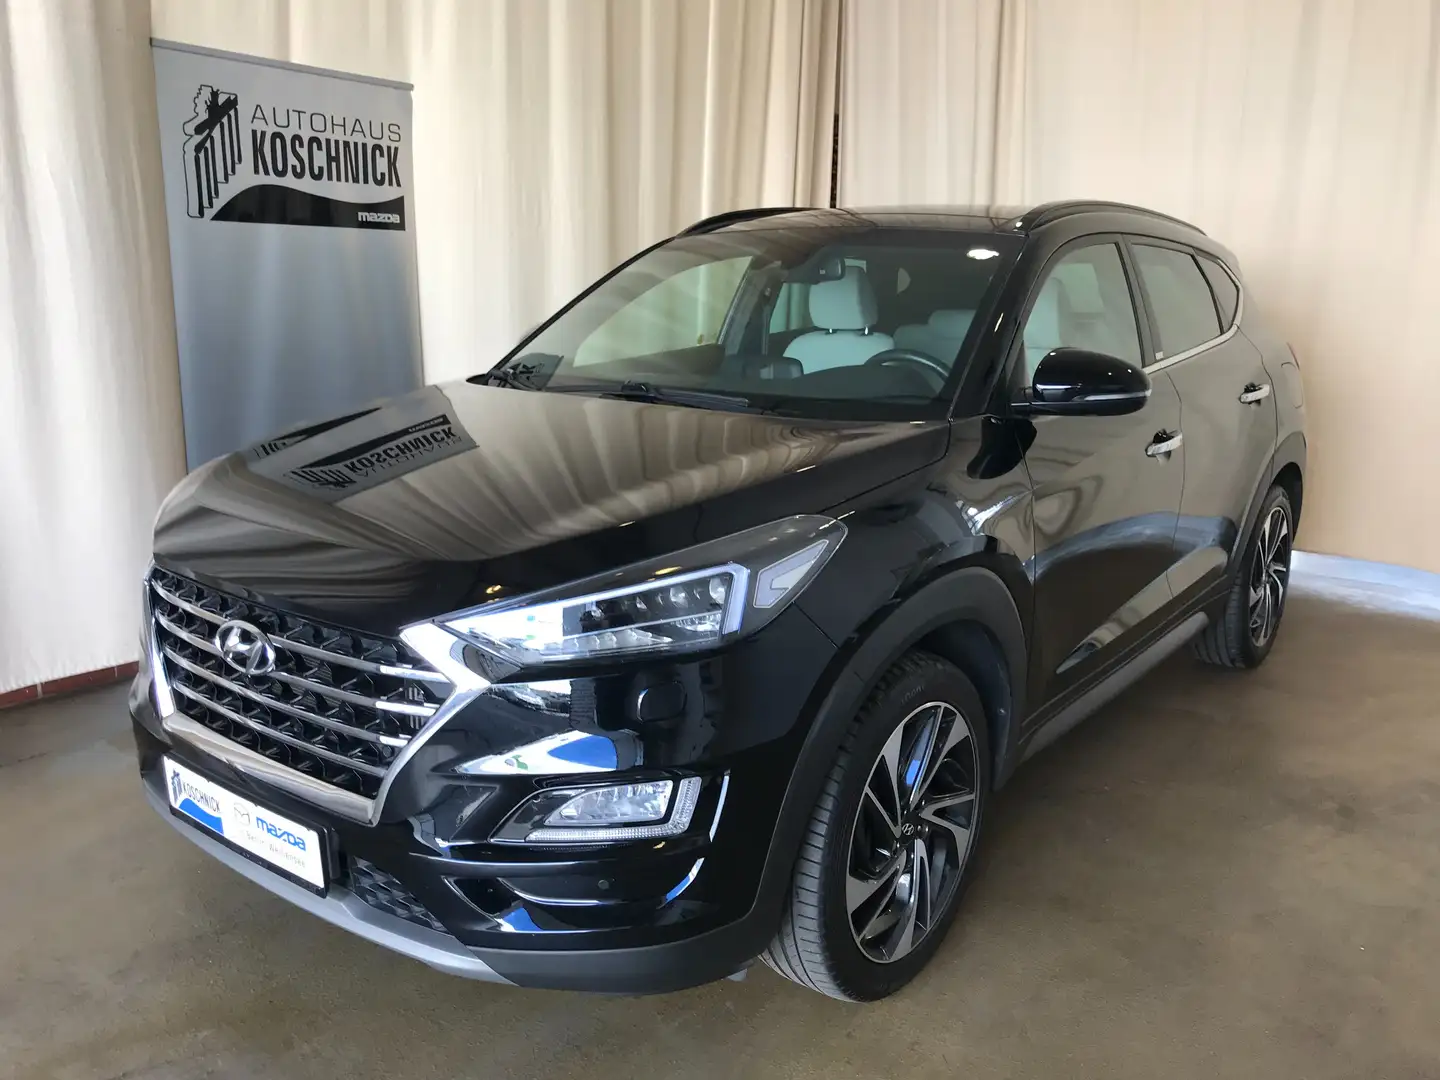 Hyundai TUCSON SUV/Geländewagen/Pickup in Schwarz gebraucht in